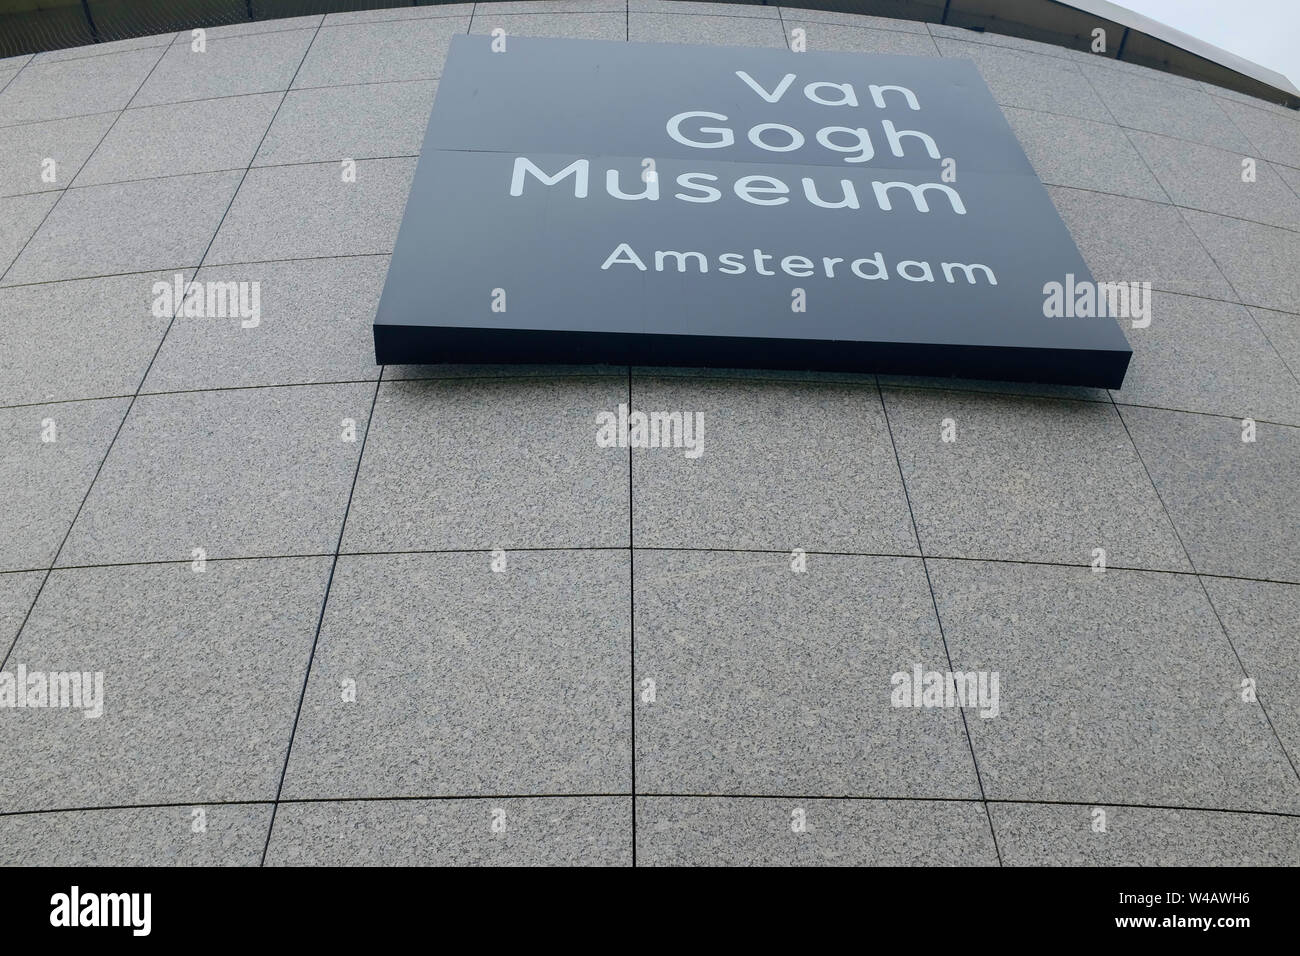 Entrée du musée Van Gogh, Amsterdam, Pays-Bas. Banque D'Images